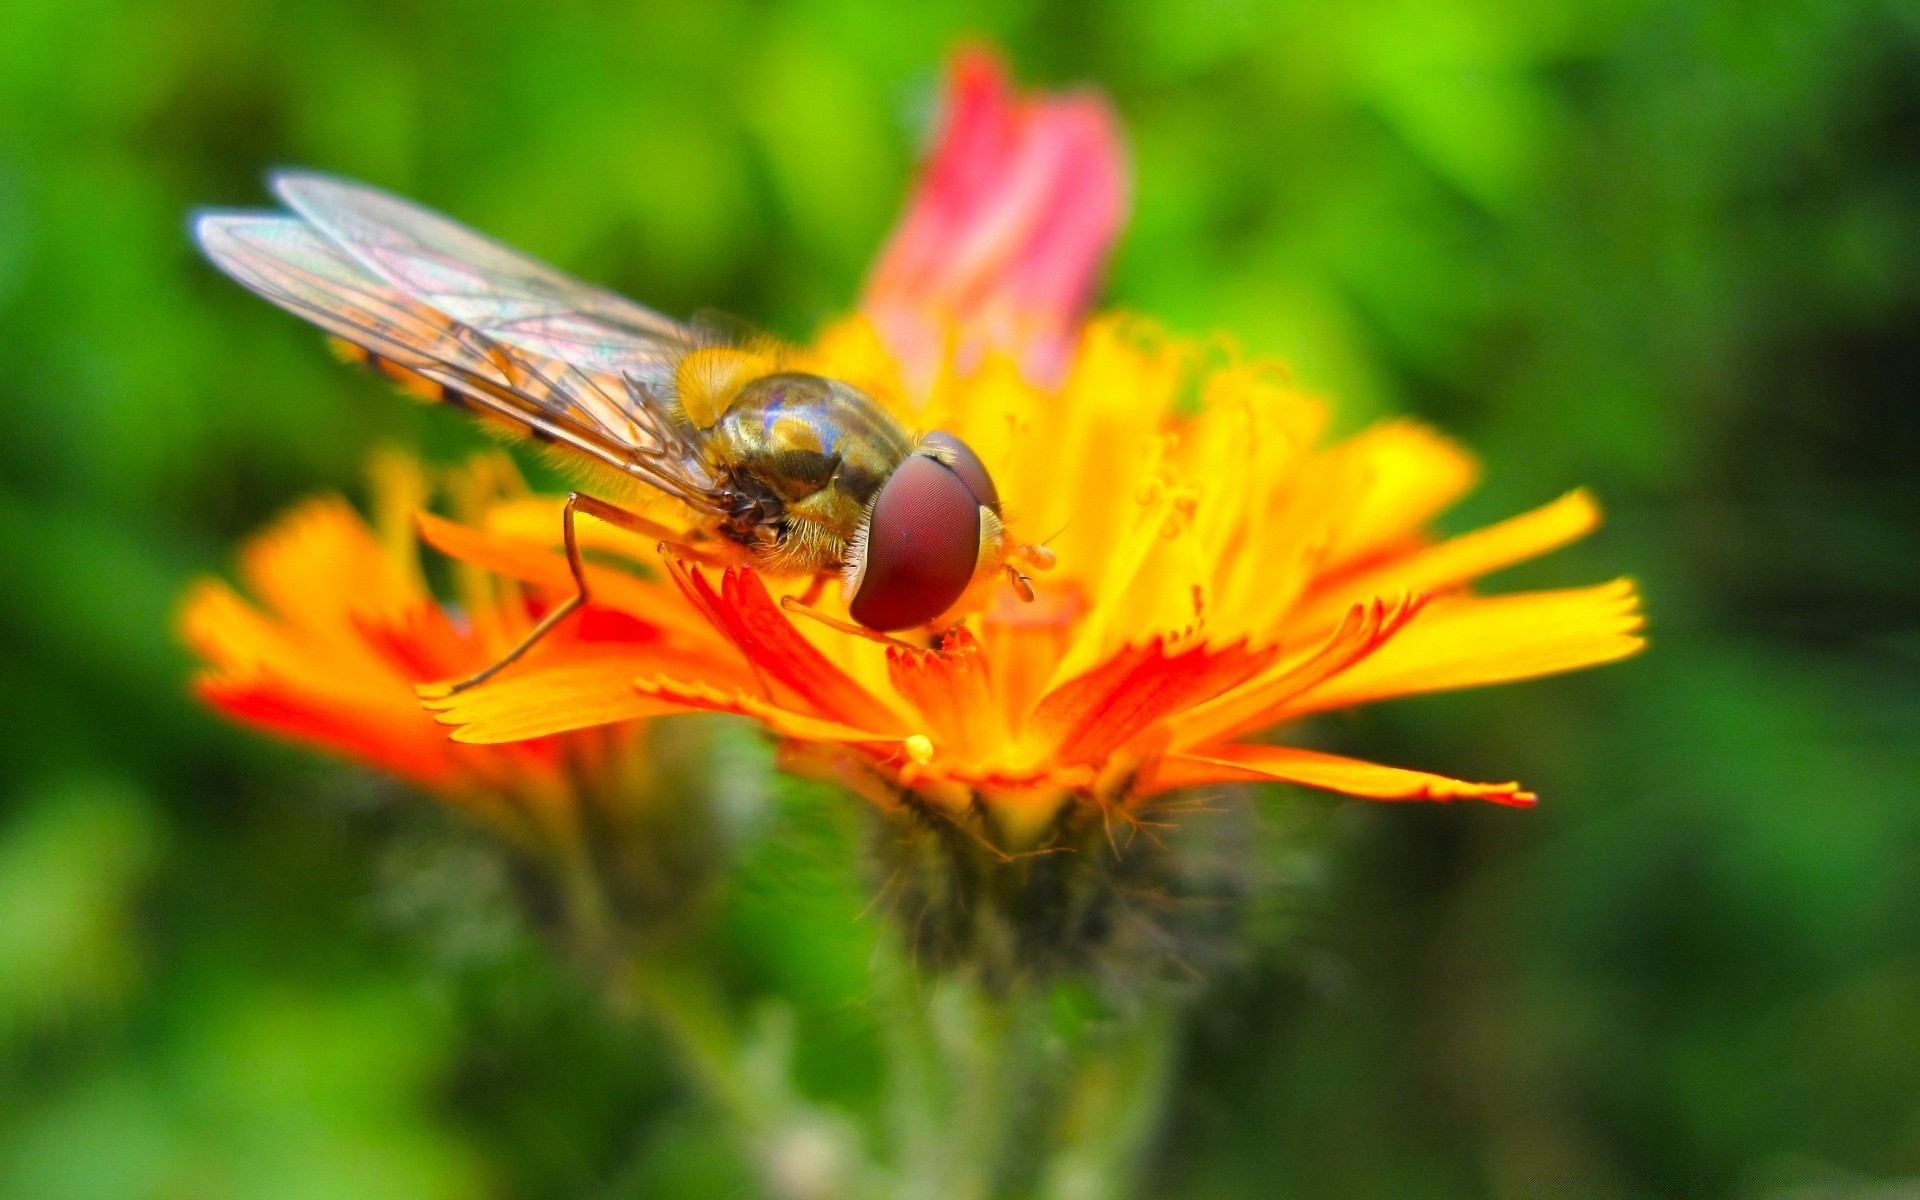 насекомые природа насекомое пчелка цветок лето на открытом воздухе мед летать дикий сад флора пыльца крыло лист нектар опыление крупным планом цвет животное